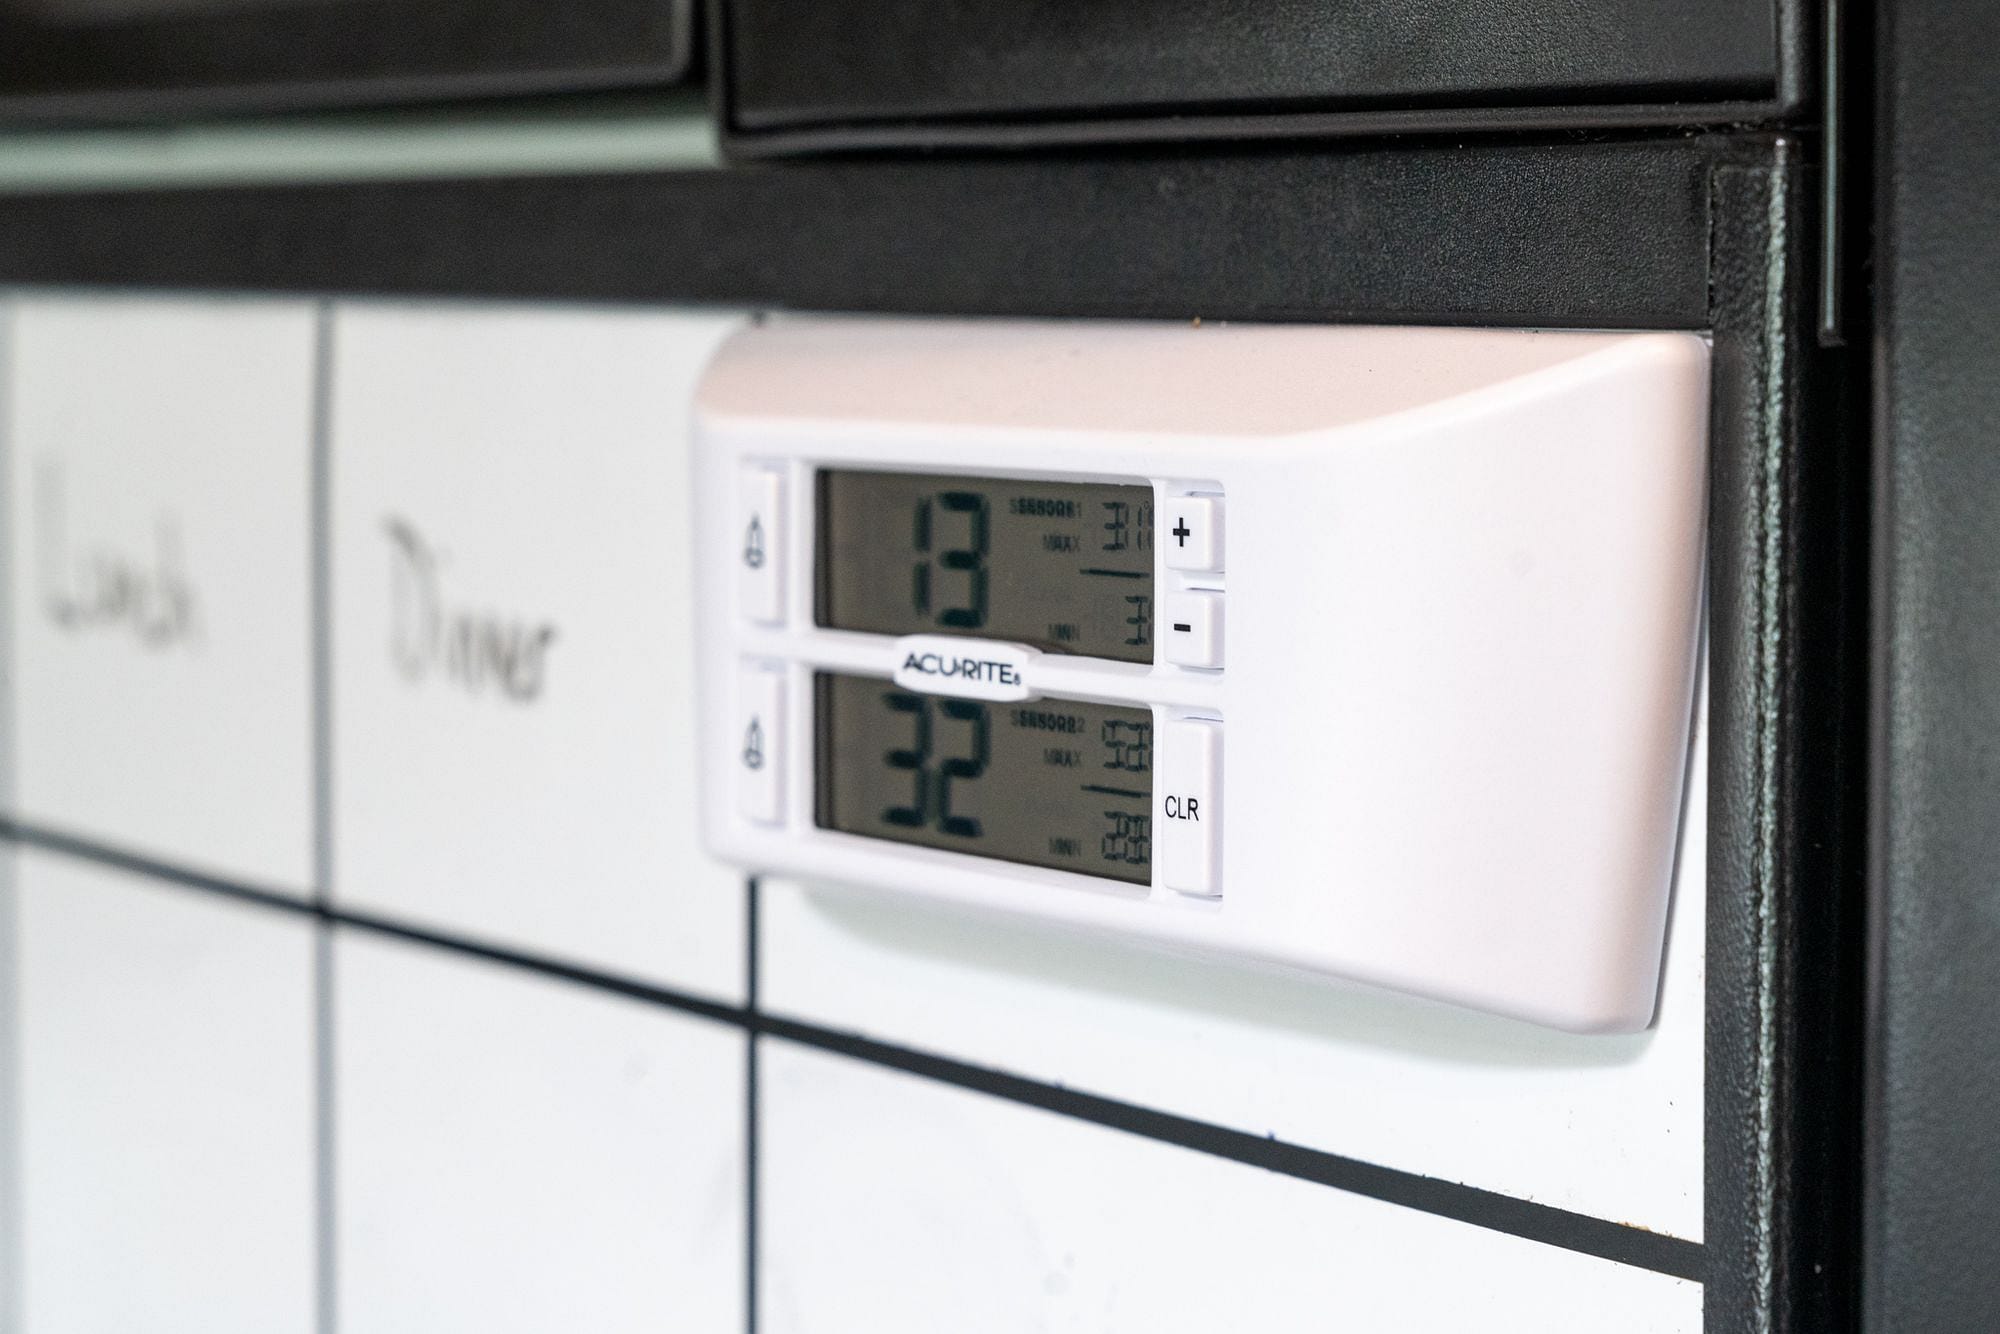 Monitoring RV Fridge & Freezer Temperatures with the AcuRite 986